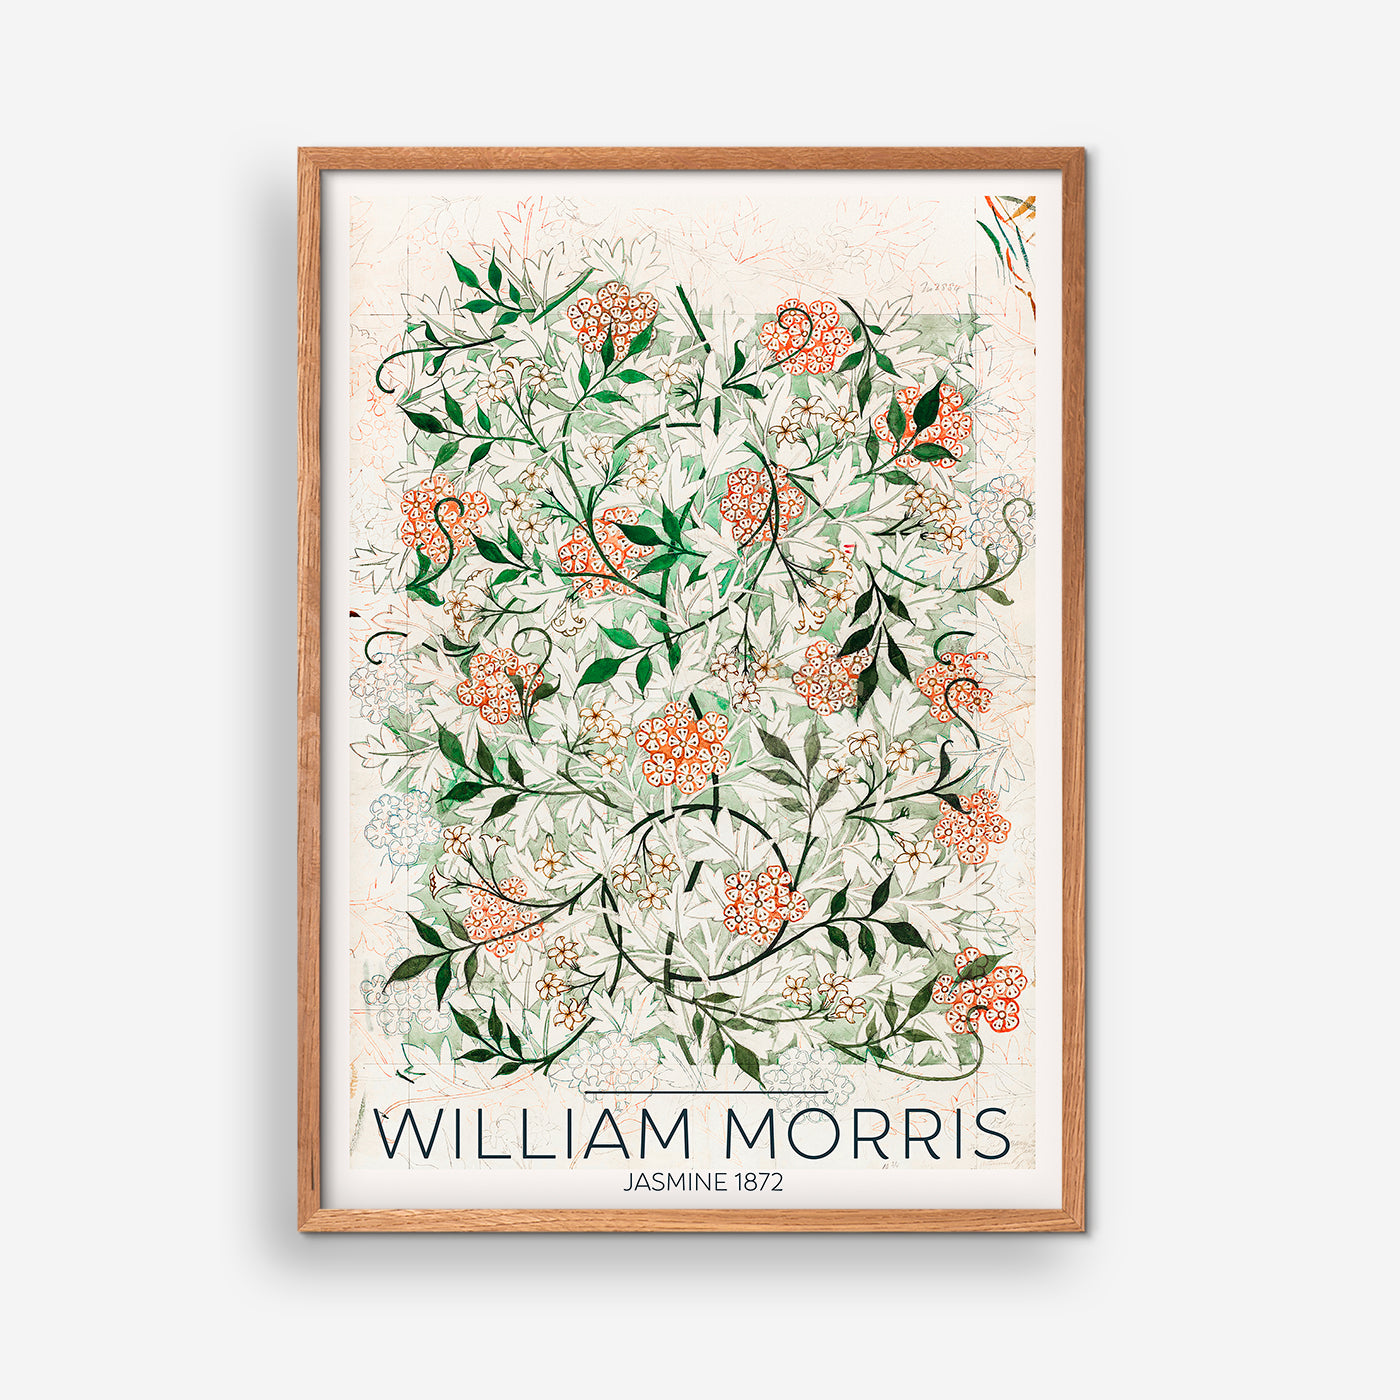 Jasmine 1872 - William Morris